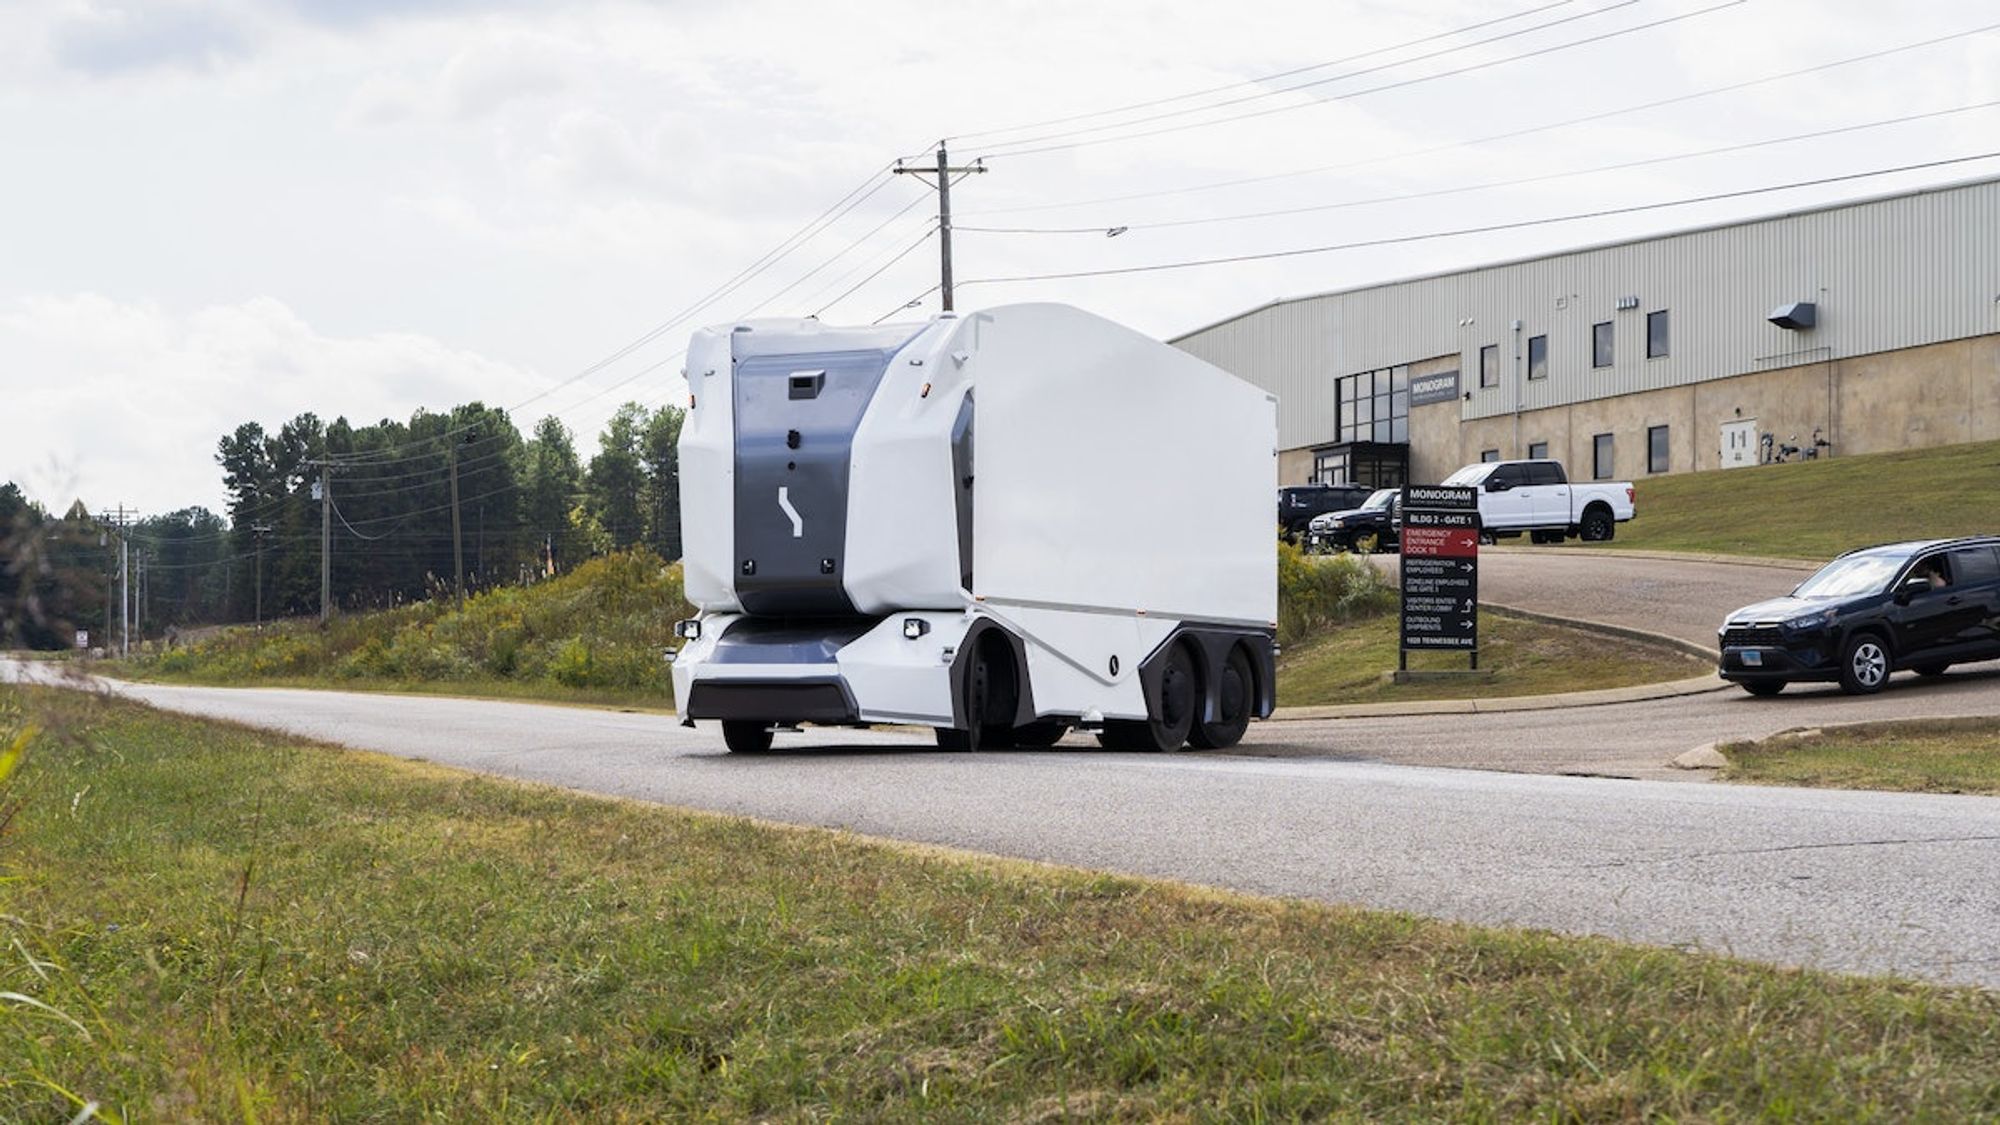 Einride, GE Appliances Complete Autonomous Vehicle Pilot on U.S. Public Road | Manufacturing Business Technology